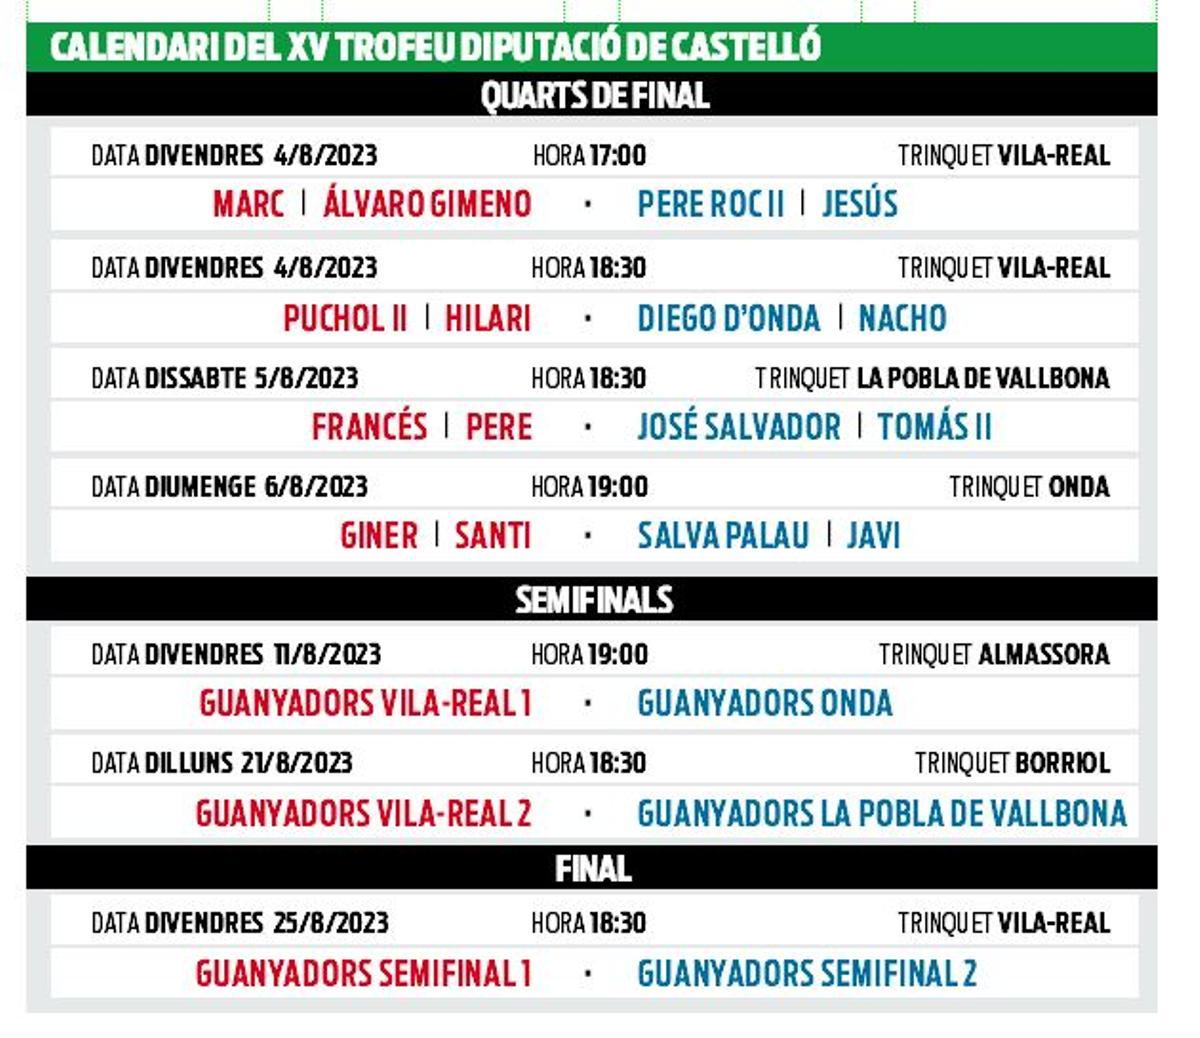 Calendari Torfeu Diputacó de Castelló.